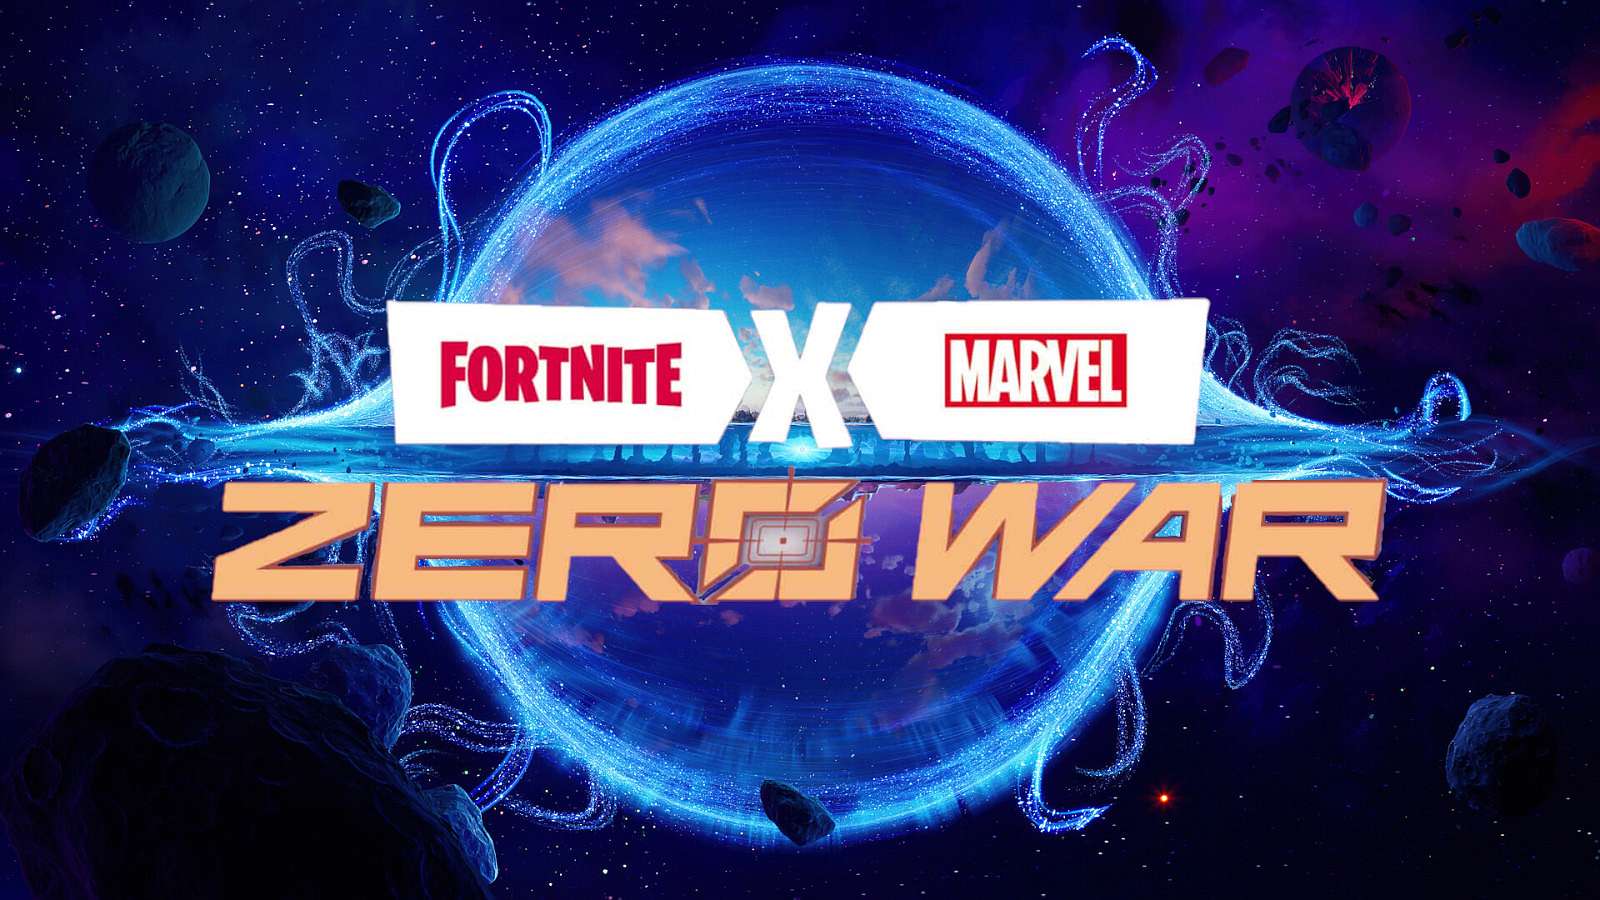 [Fortnite] Přichází nová komiksová spolupráce Fortnite x Marvel